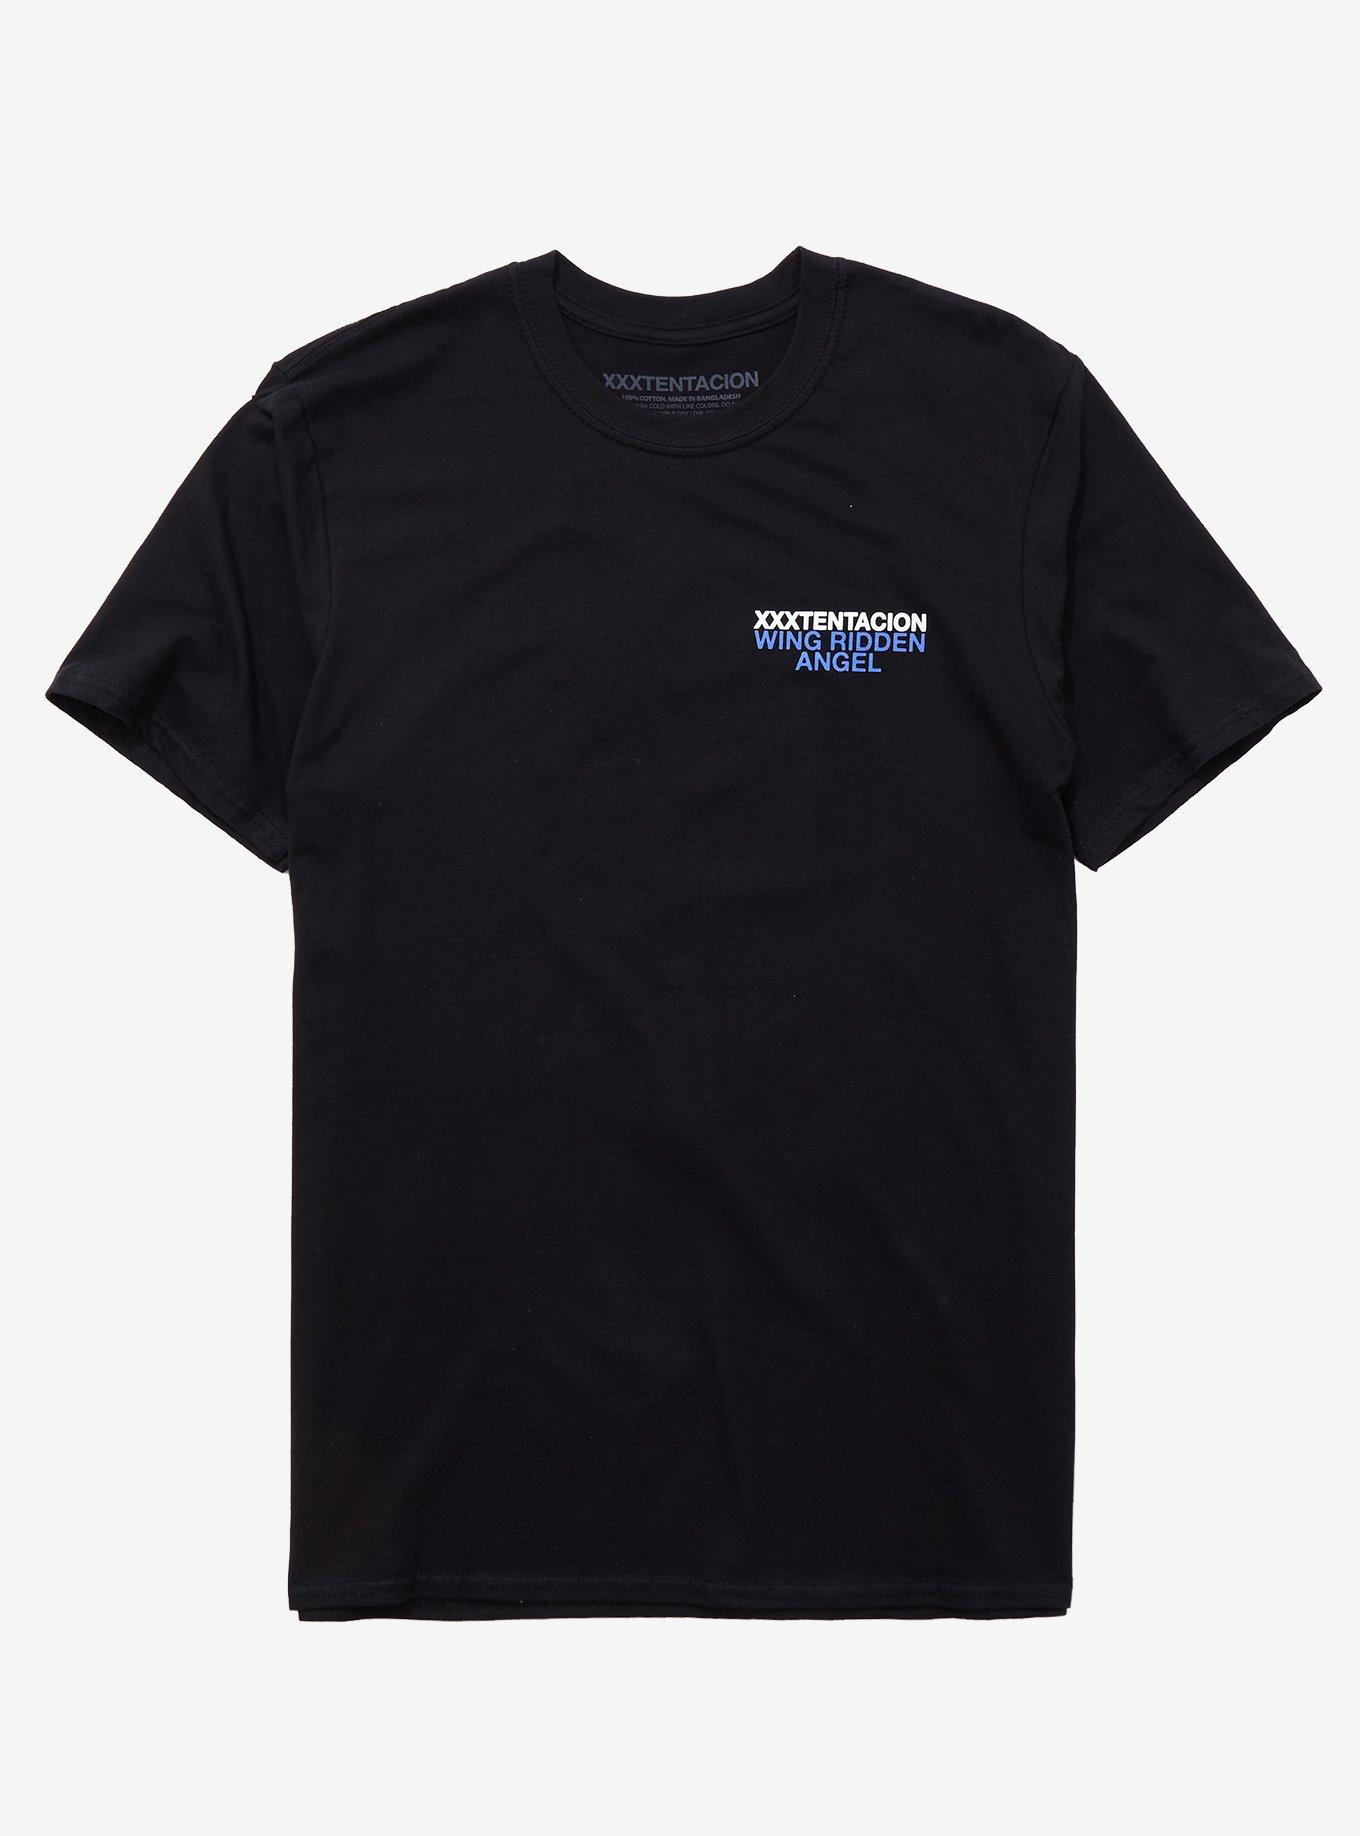 XXXTentacion Wing Ridden Angel T-Shirt, BLACK, hi-res